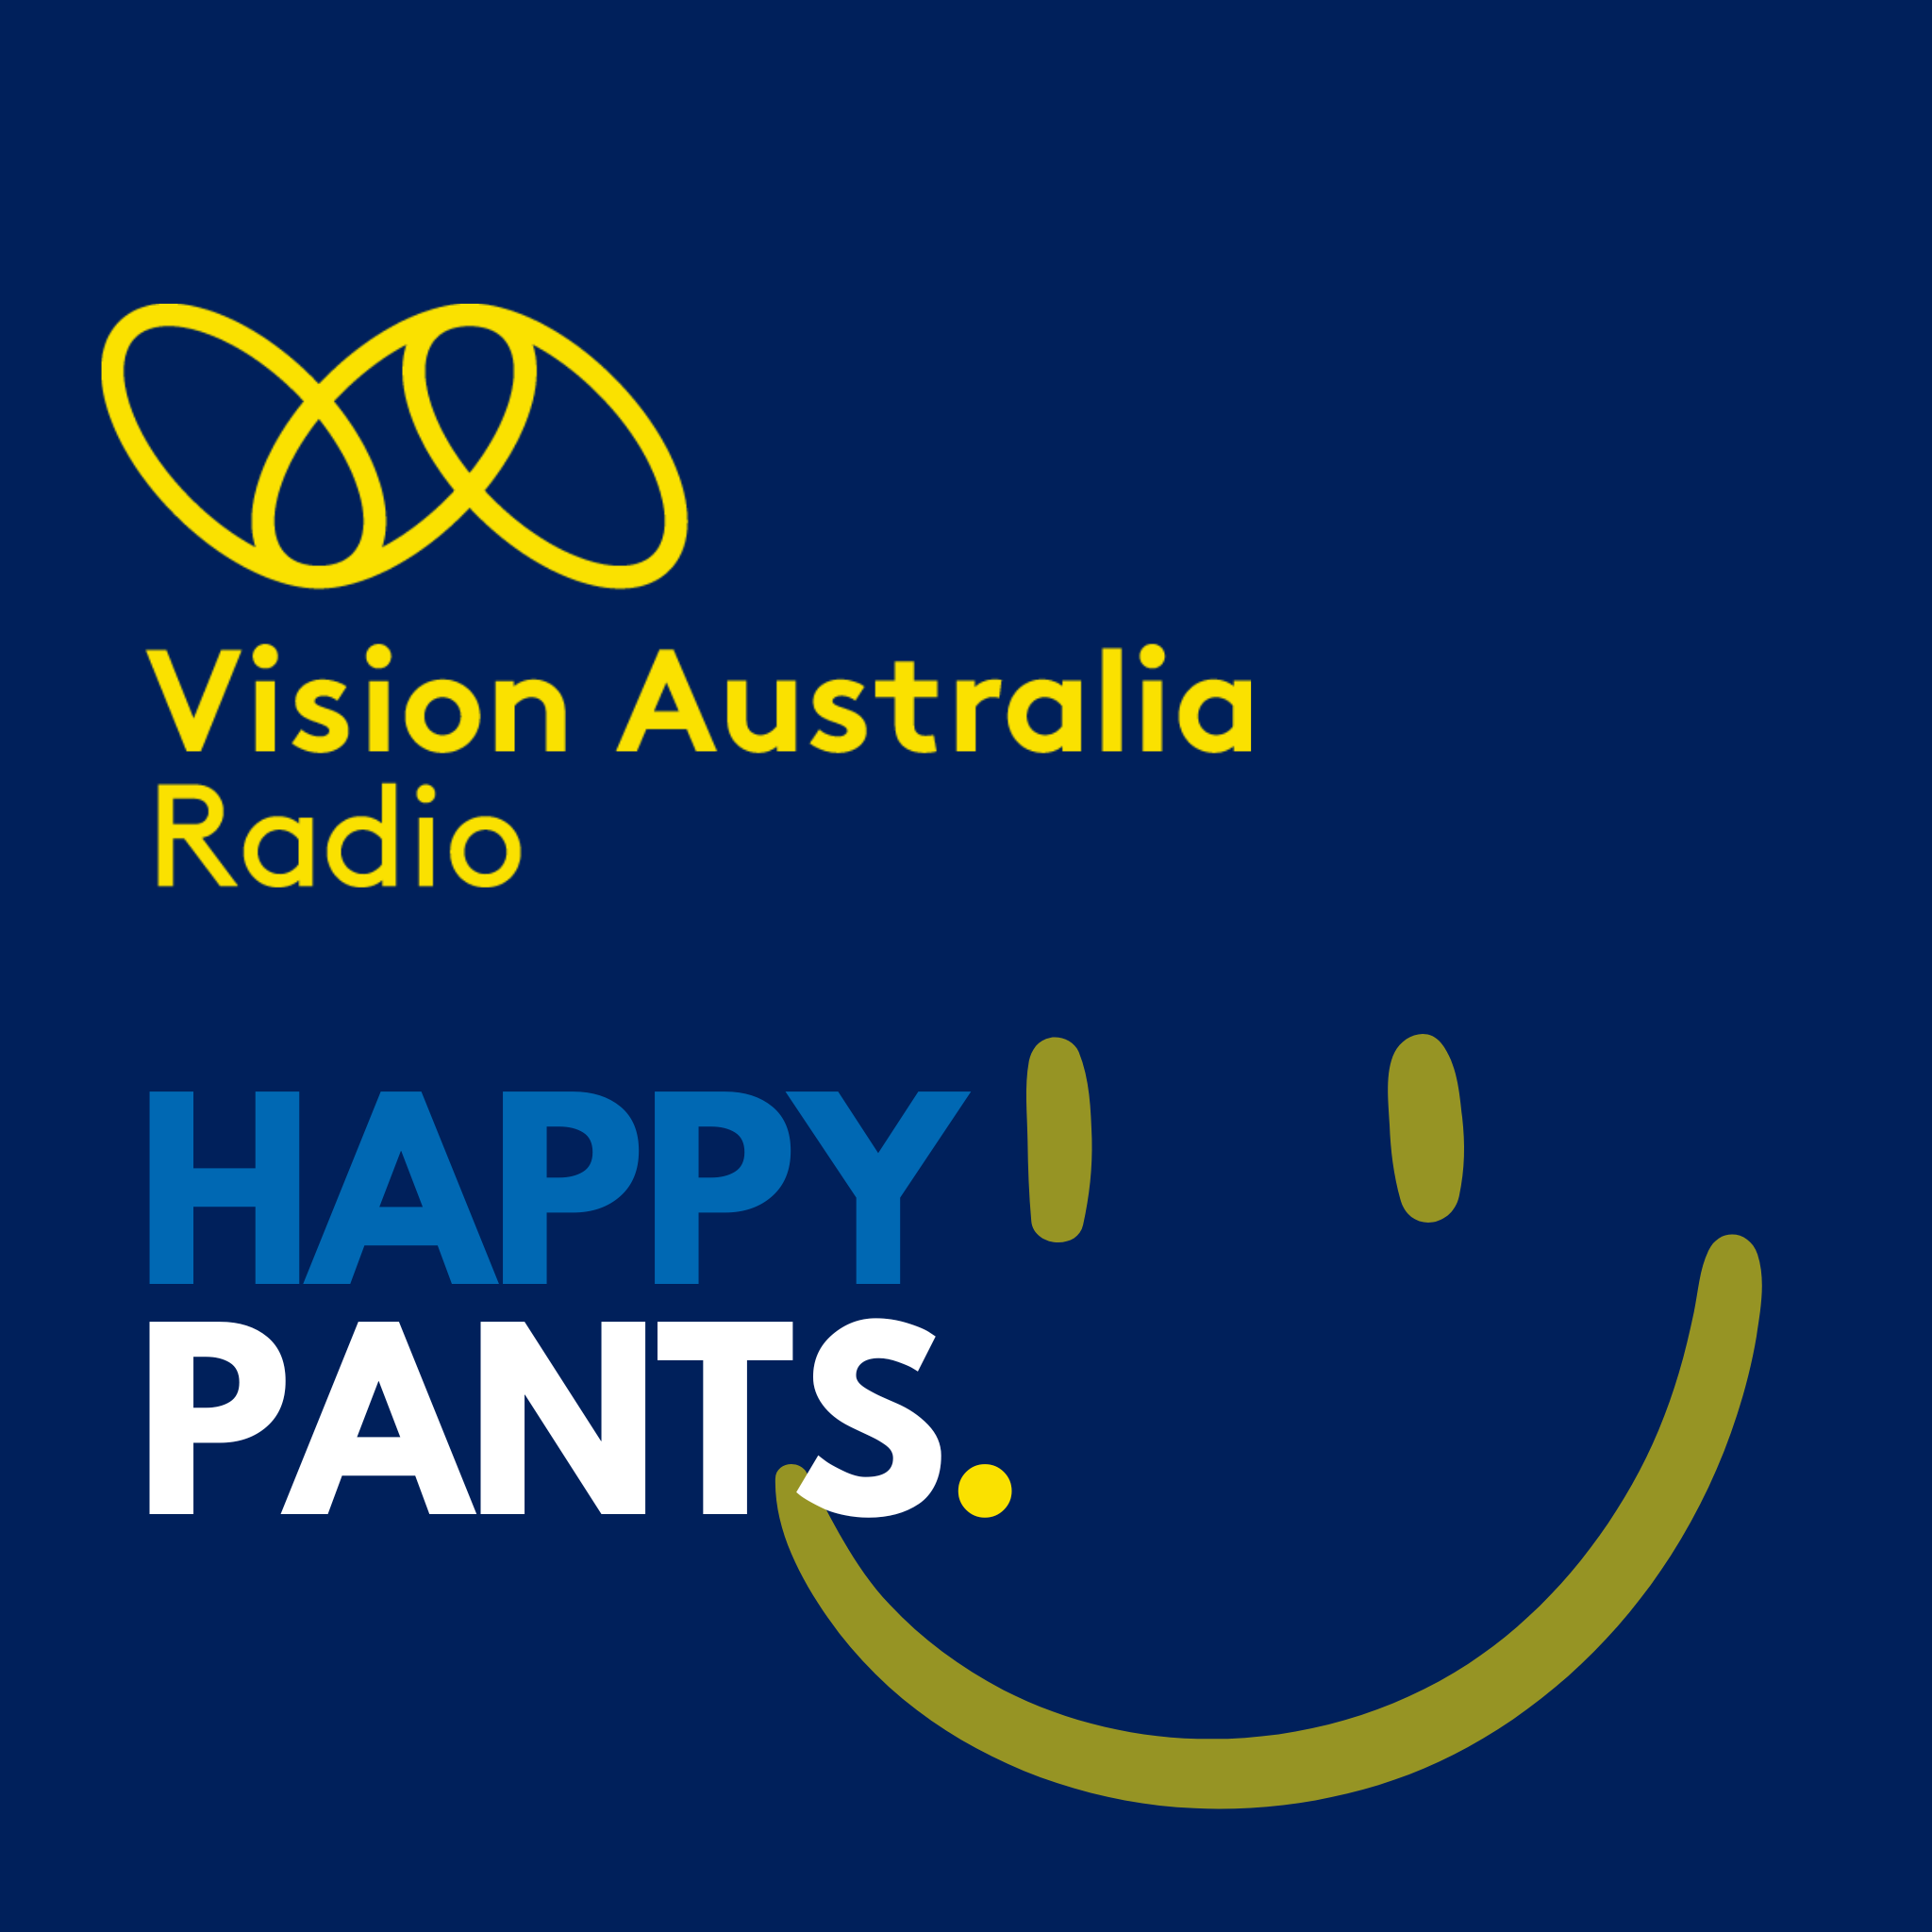 Happy Pants - January 20